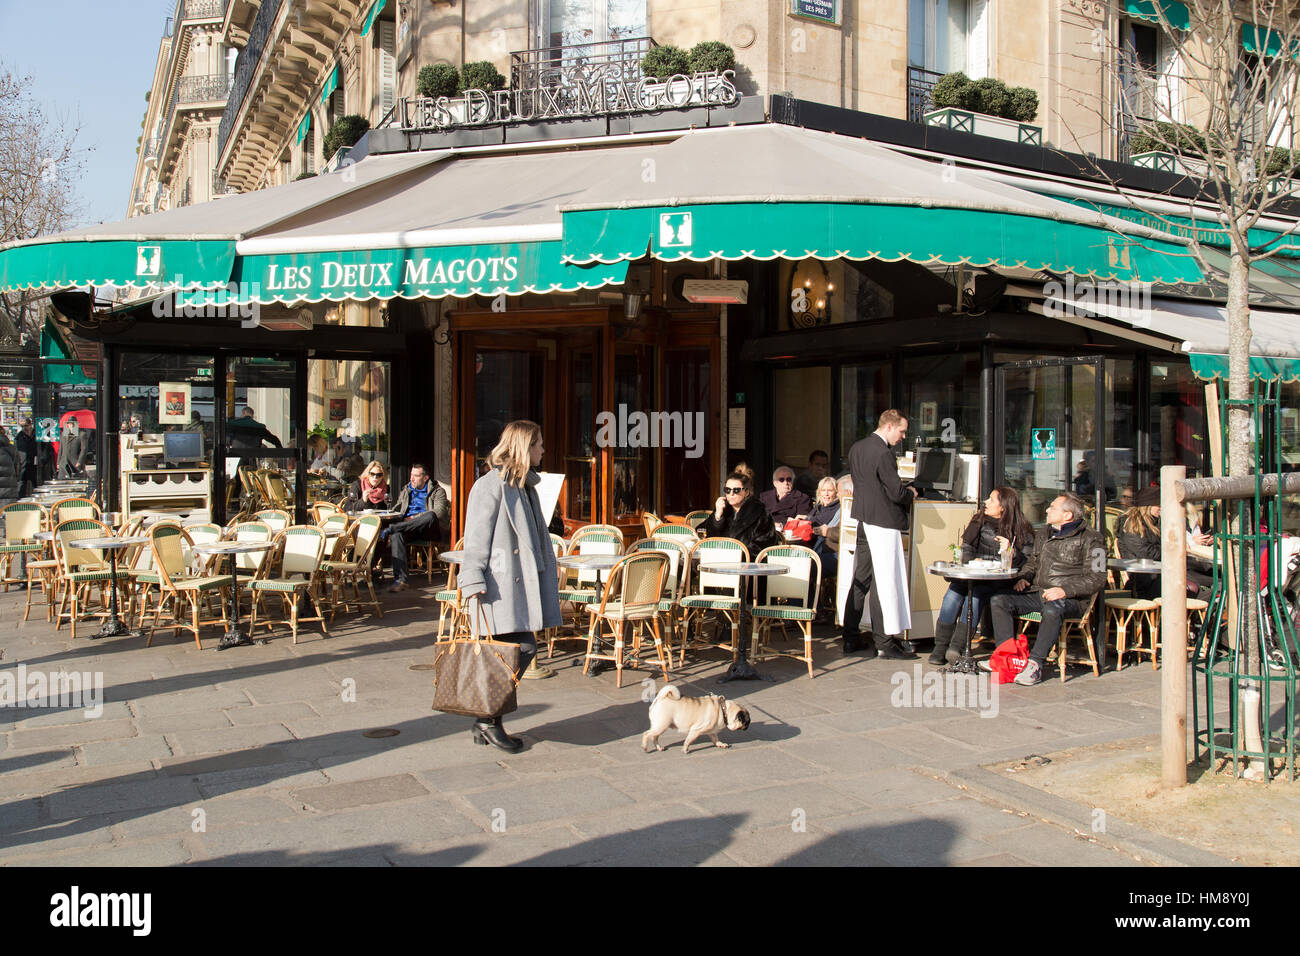 Les touristes assis dehors les Deux Magots cafe in Paris France en hiver Banque D'Images